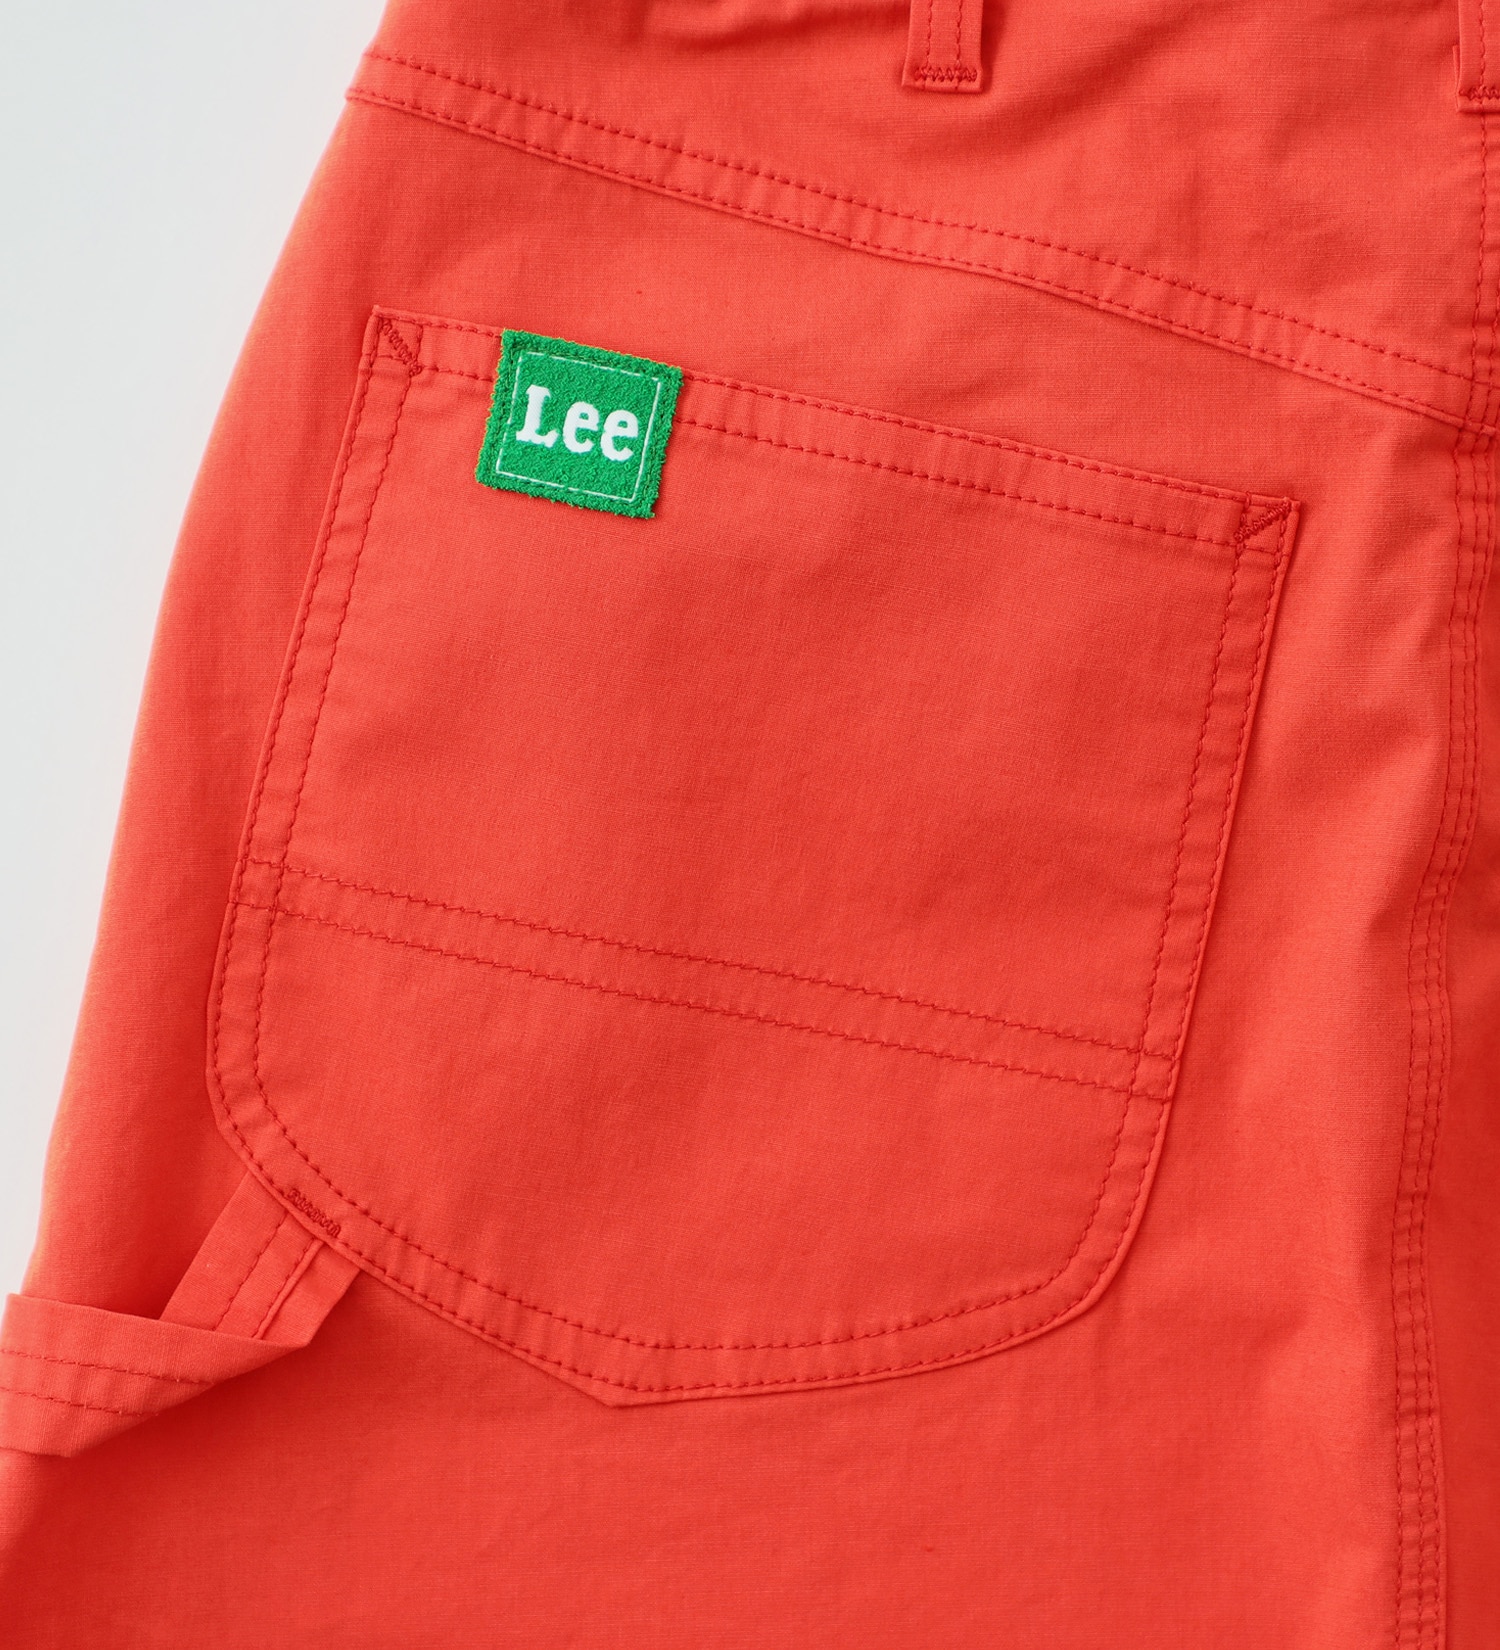 Lee(リー)の【試着対象】【Lee GOLF】インナー付きペインターパンツモチーフ スカート|スカート/スカート/レディース|オレンジ